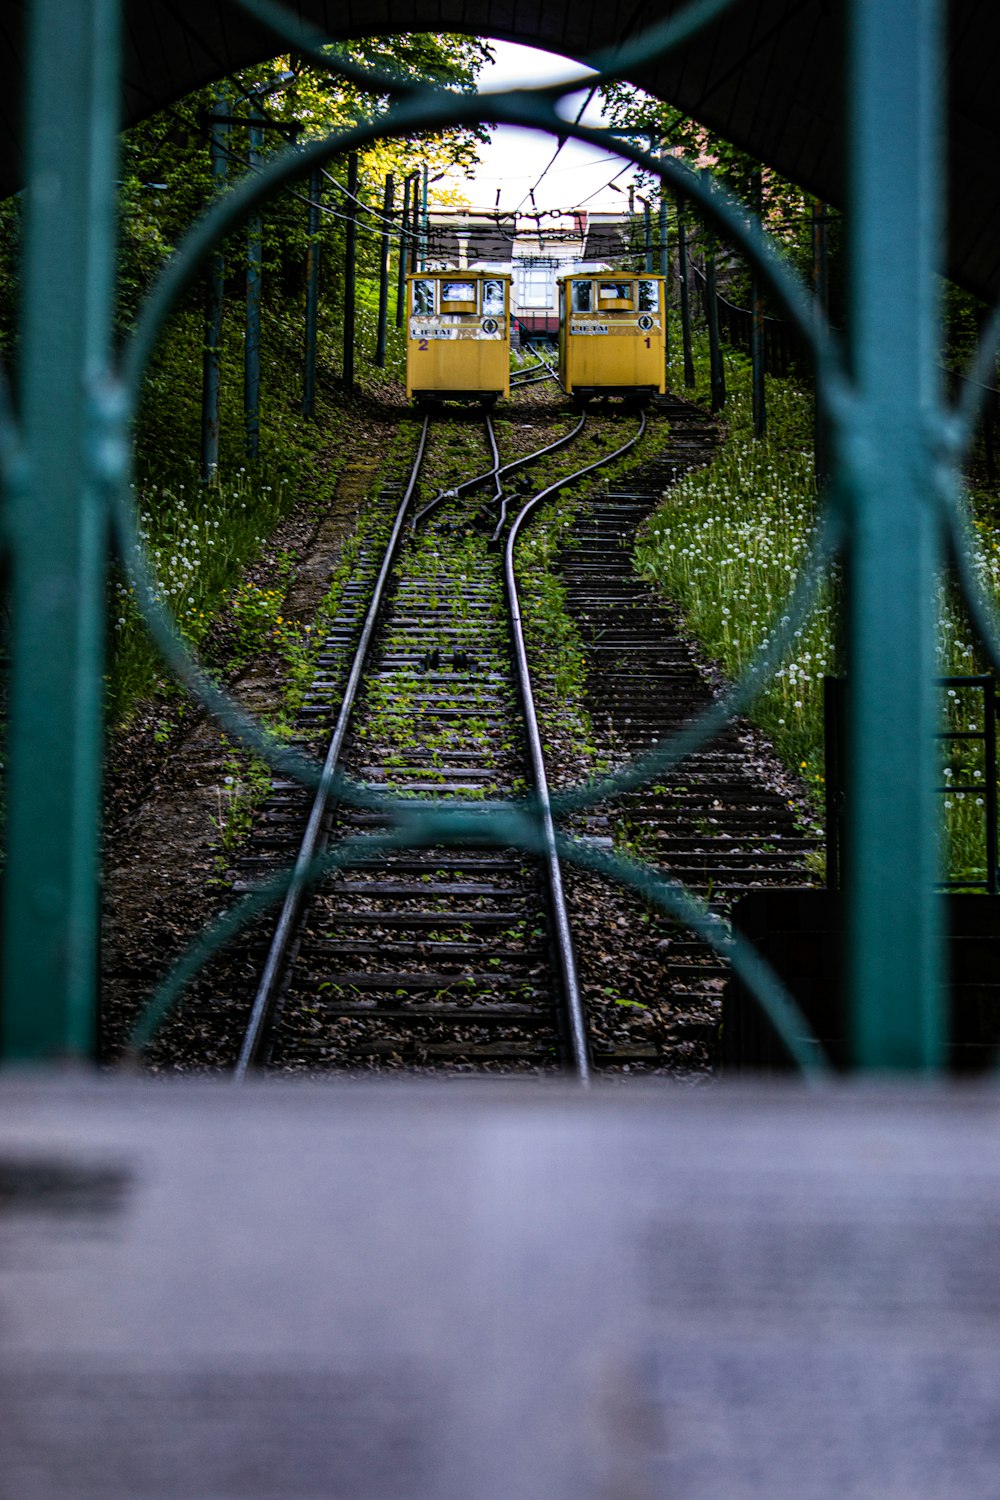 trem amarelo nos trilhos ferroviários